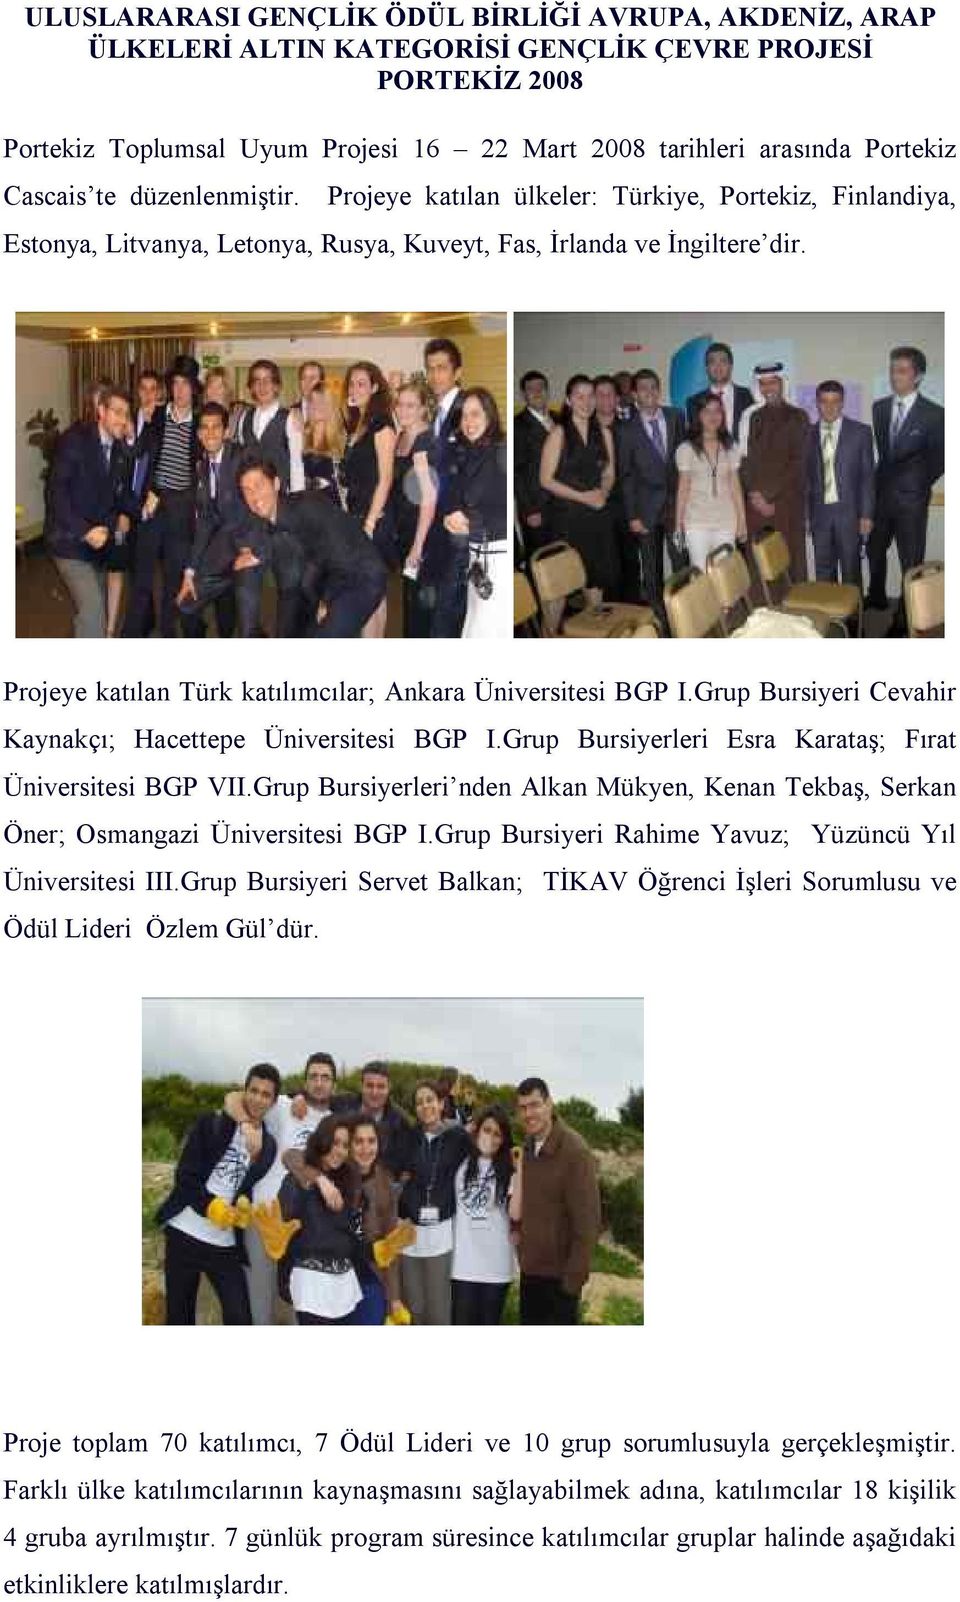 Projeye katılan Türk katılımcılar; Ankara Üniversitesi BGP I.Grup Bursiyeri Cevahir Kaynakçı; Hacettepe Üniversitesi BGP I.Grup Bursiyerleri Esra Karataş; Fırat Üniversitesi BGP VII.